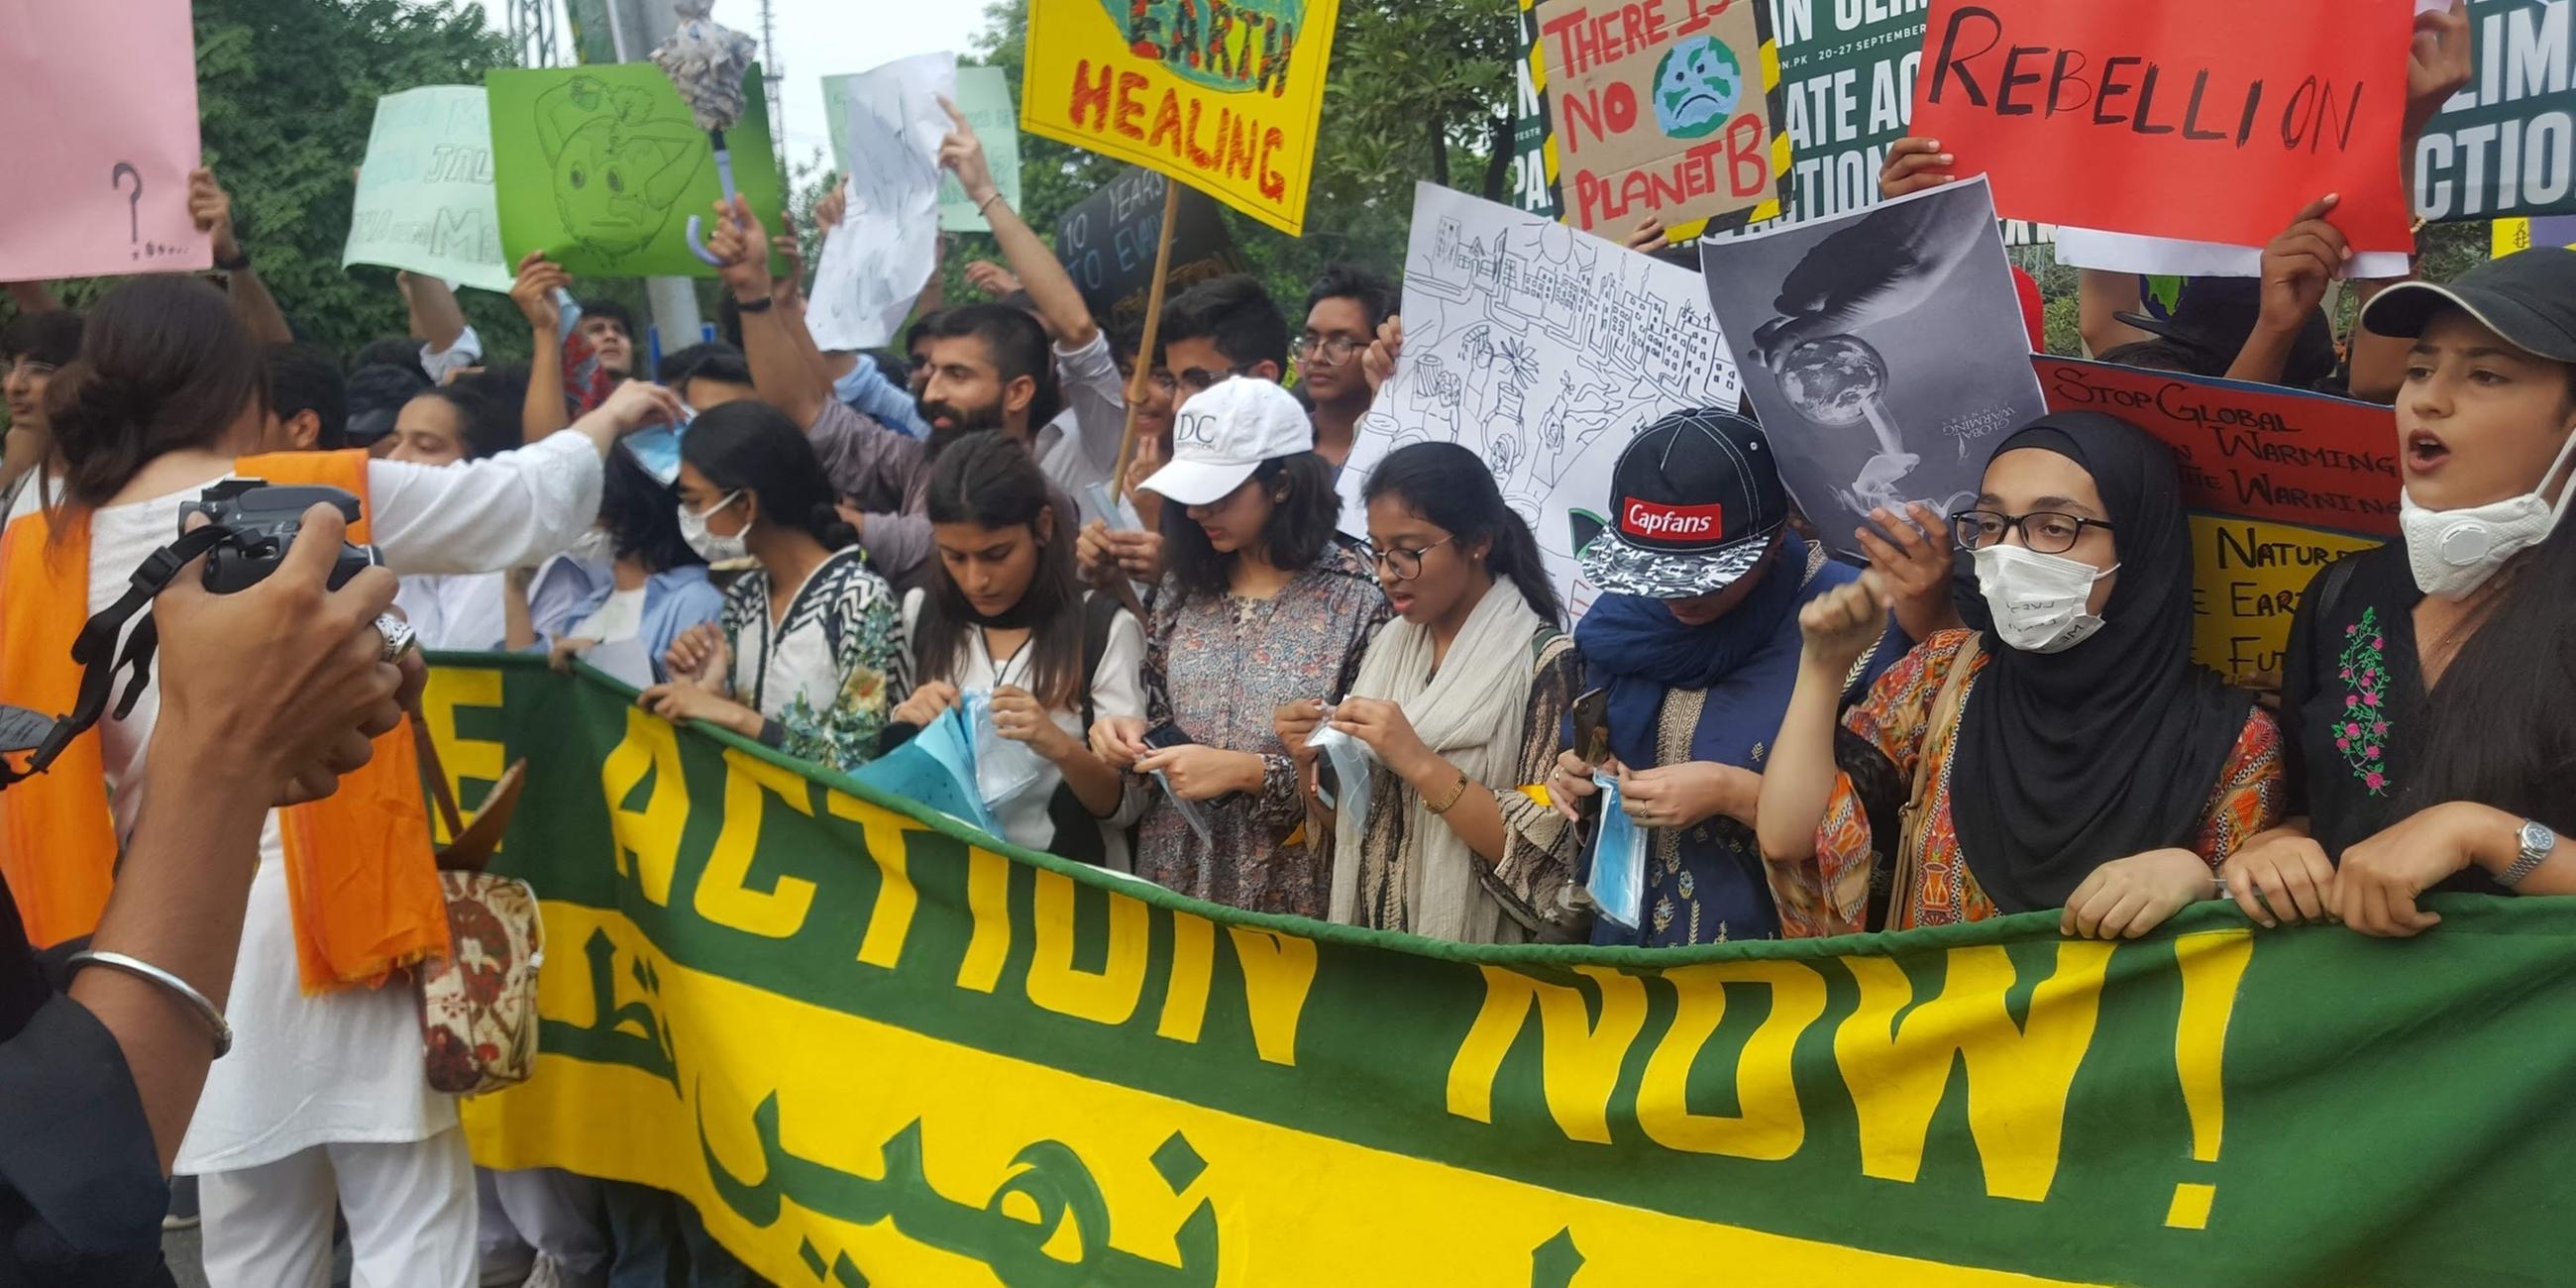 Junge Menschen, vor allem Mädchen, halten ein Banner und mehrere Schilder, die ein Handeln gegen den Klimawandel fordern. Einige tragen eine Gesichtsmaske.